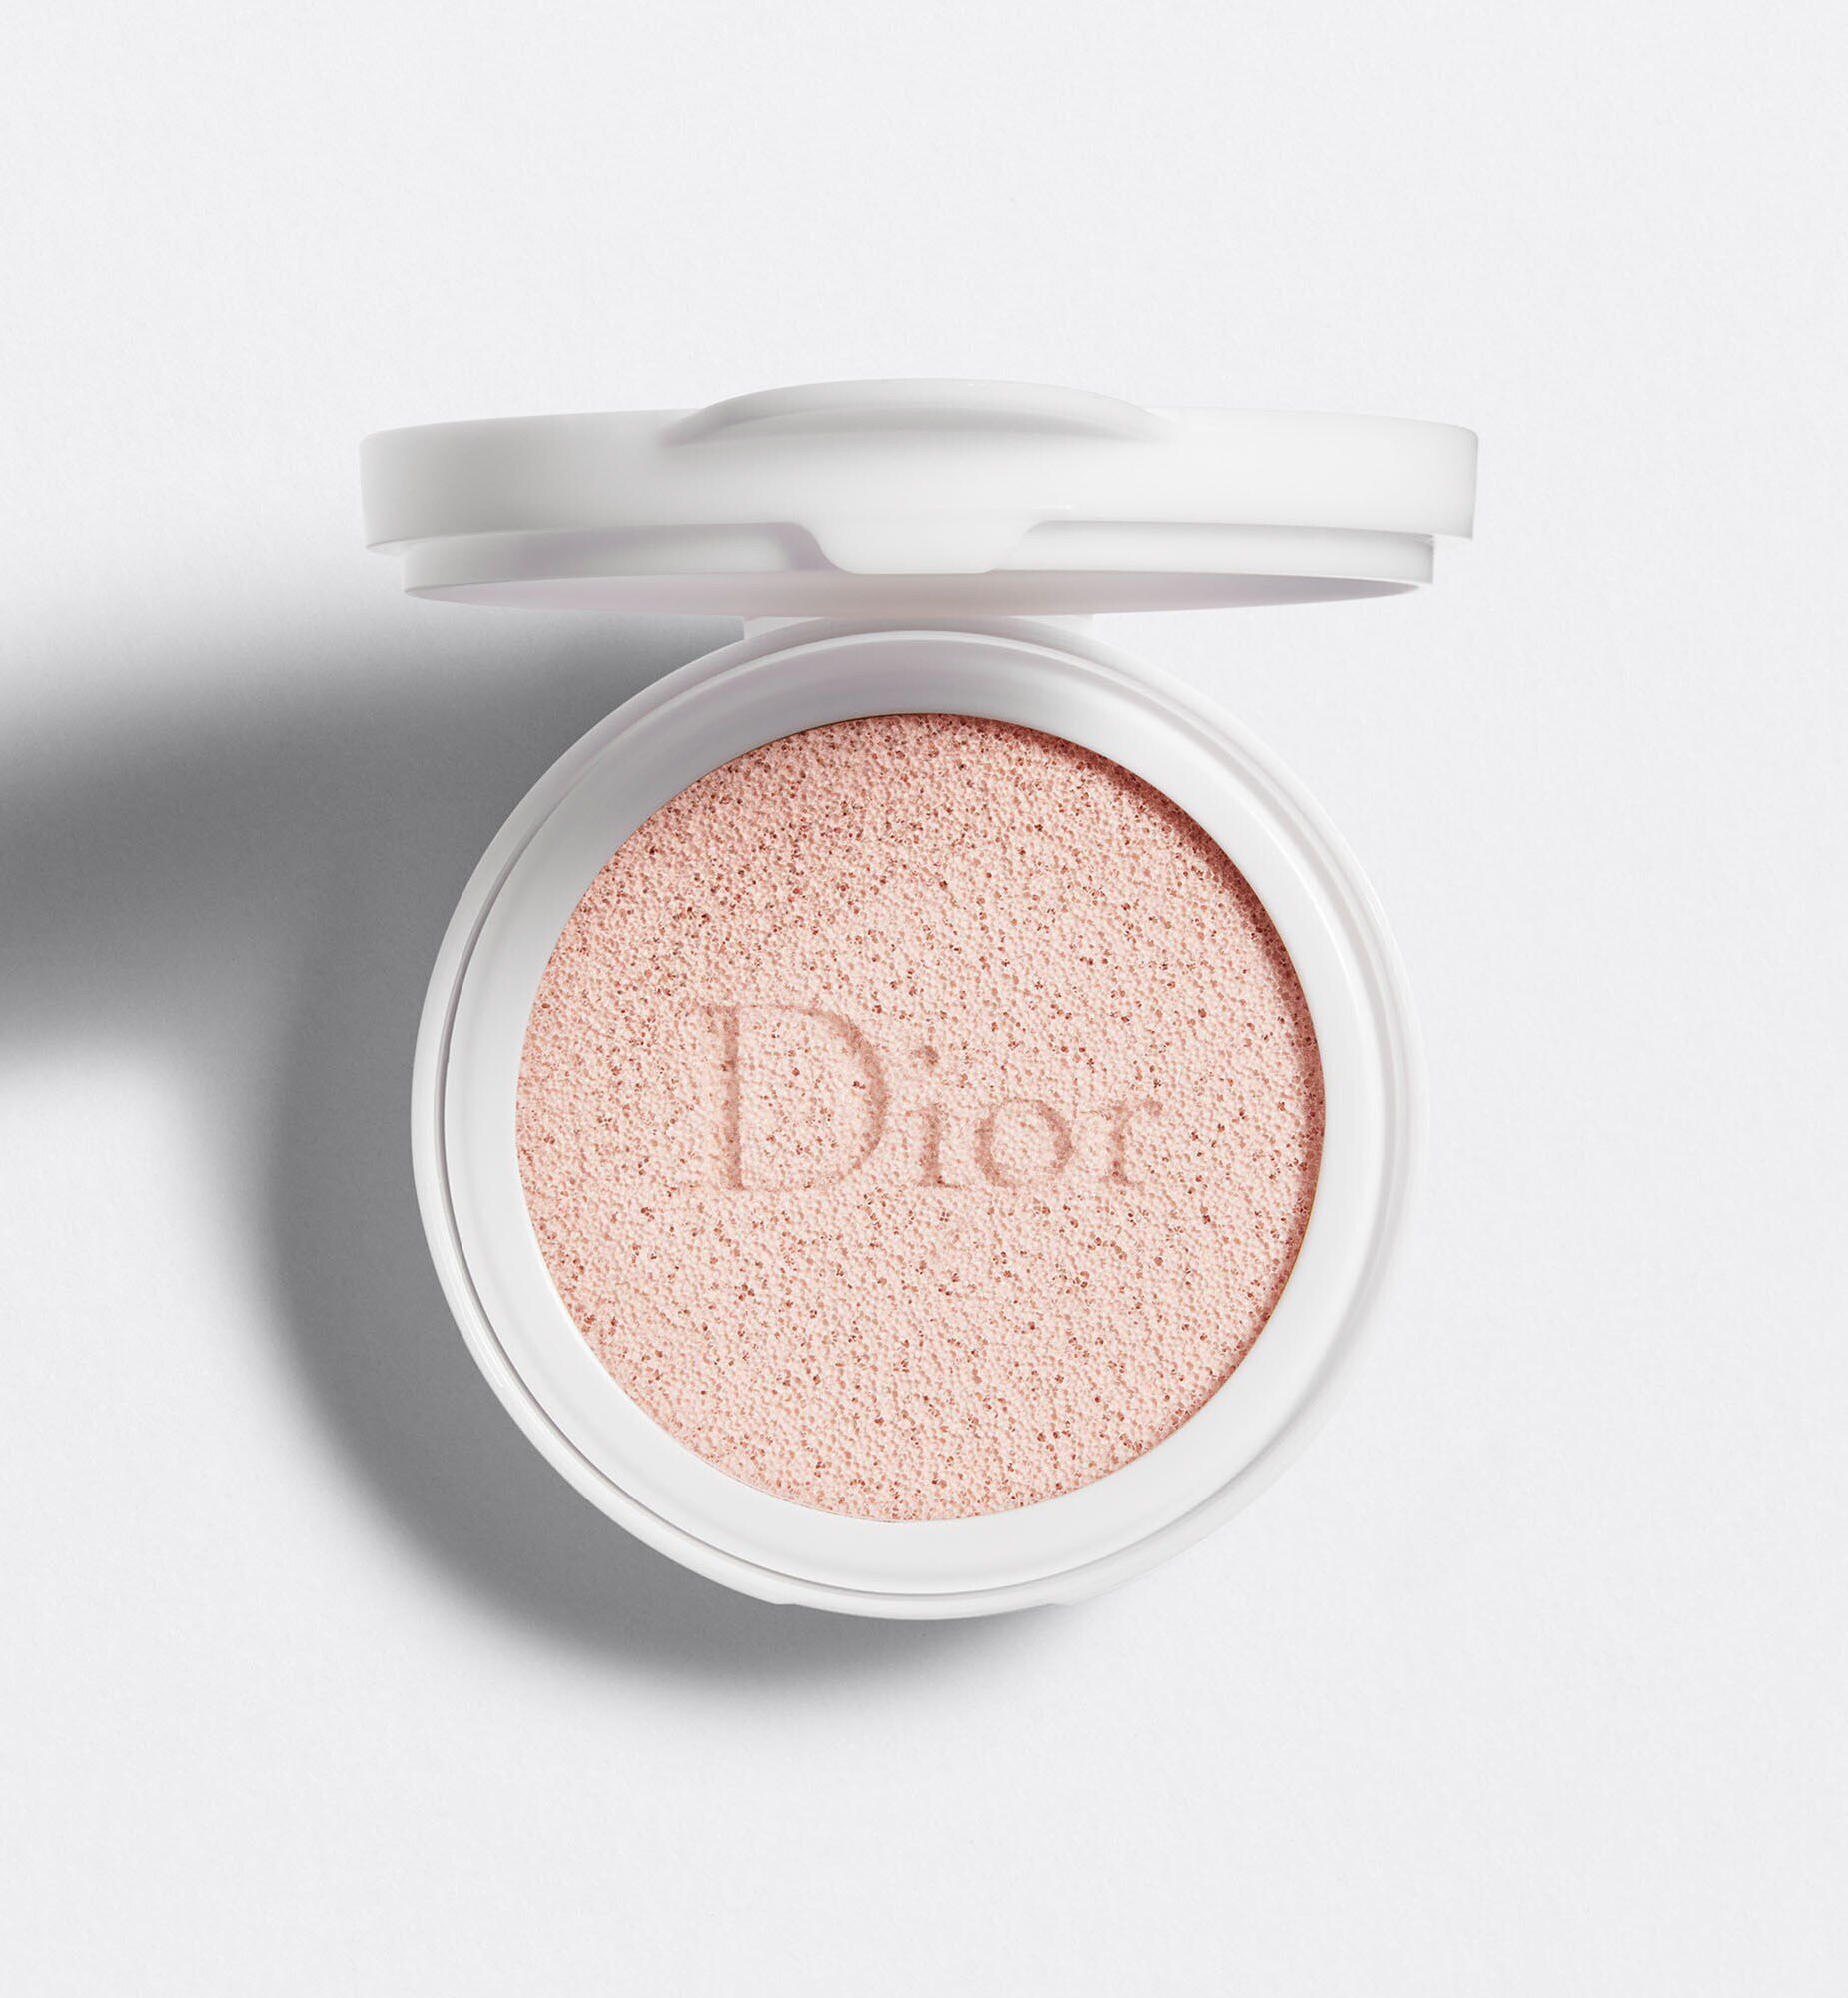 Phấn Nước Dior Capture Totale Dream Skin Perfect Skin Cushion